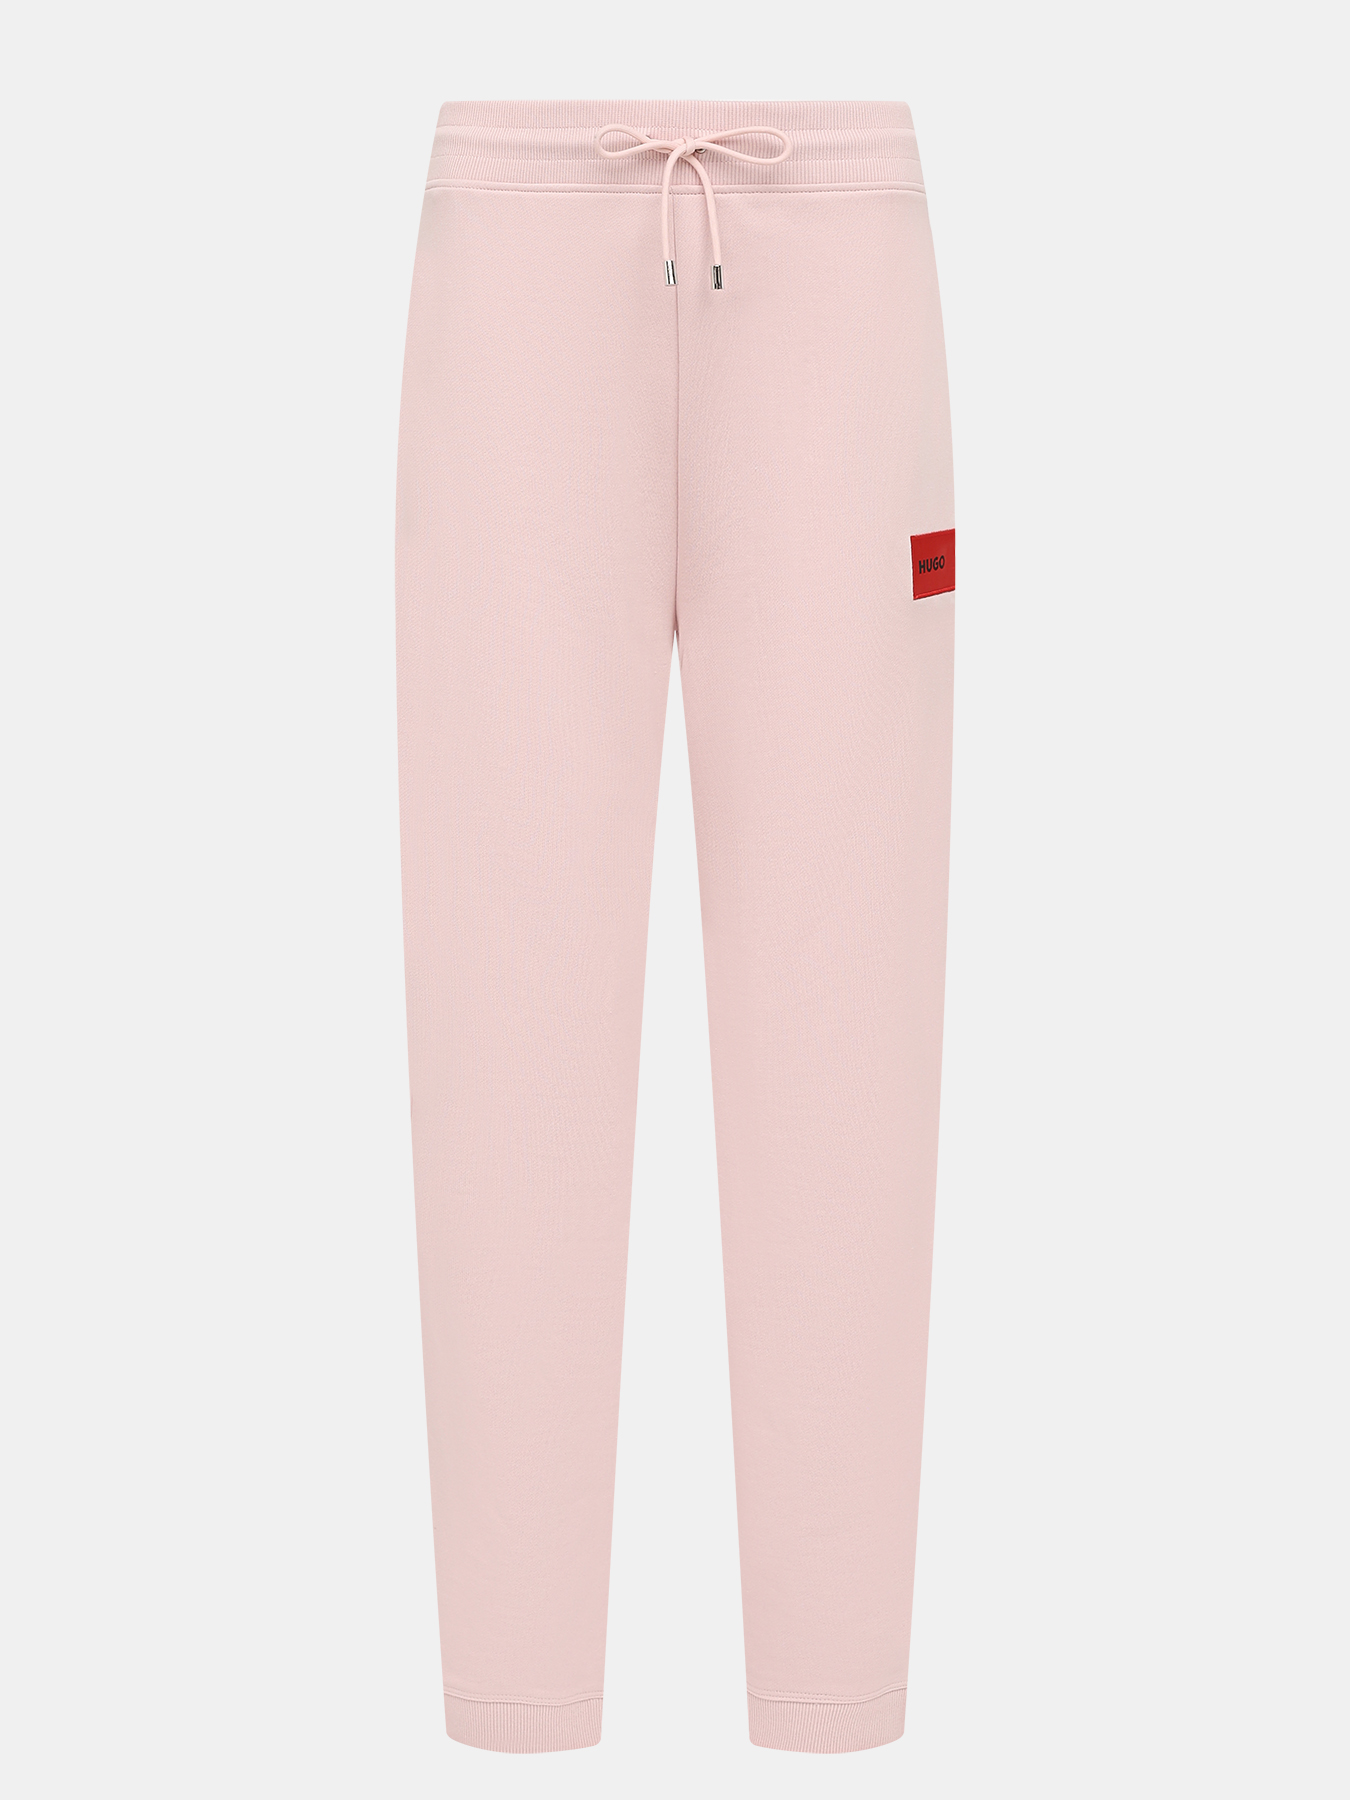 Спортивные брюки Dachibi redlabel HUGO 420594-043, цвет розовый, размер 44-46 - фото 1